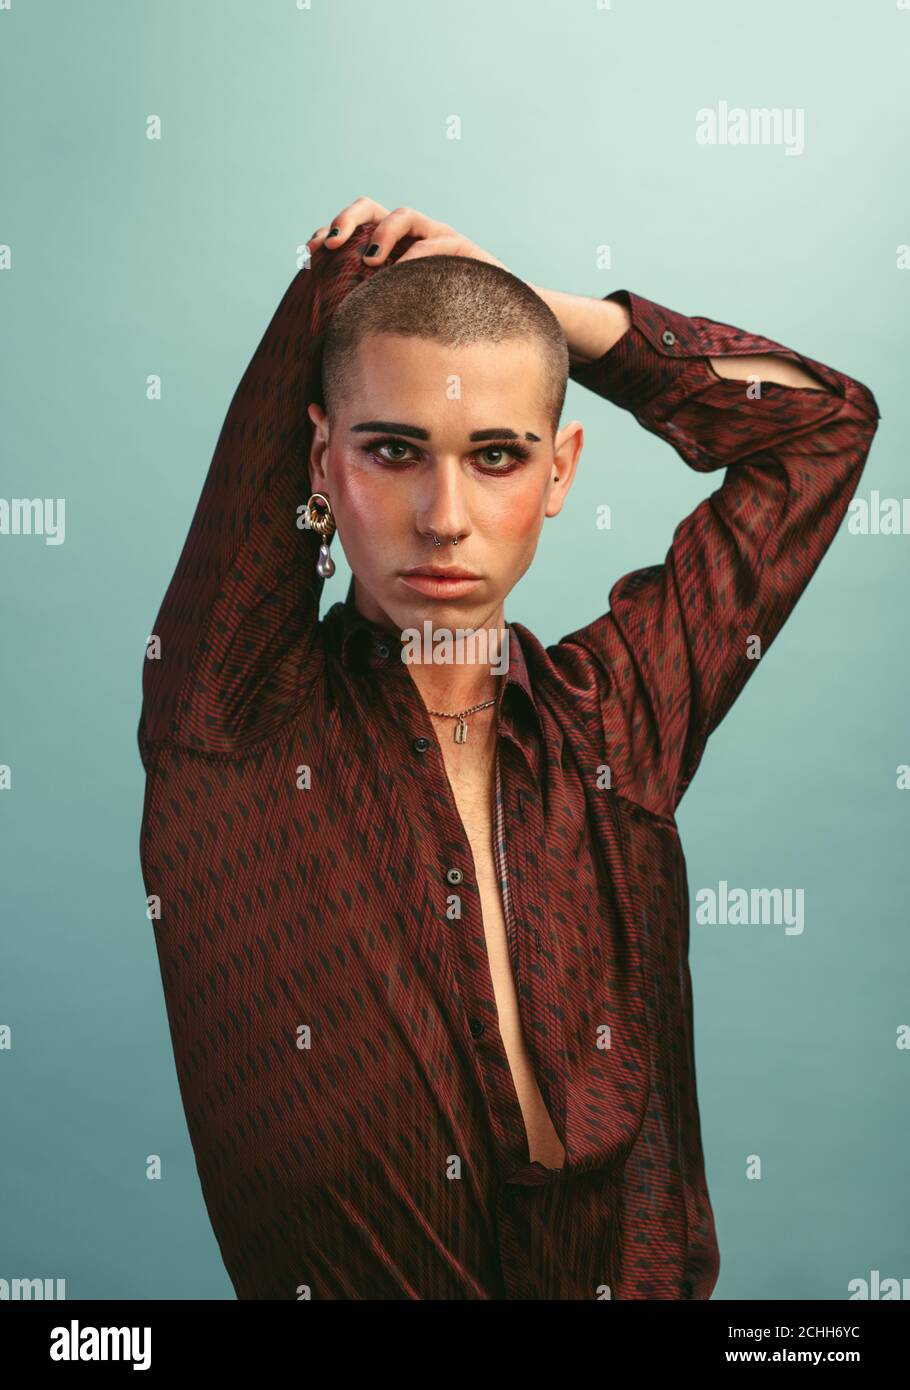 Homme gay avec maquillage portant des boucles d'oreilles debout au studio. Homme transgenre en chemise de soie posant sur fond bleu. Banque D'Images